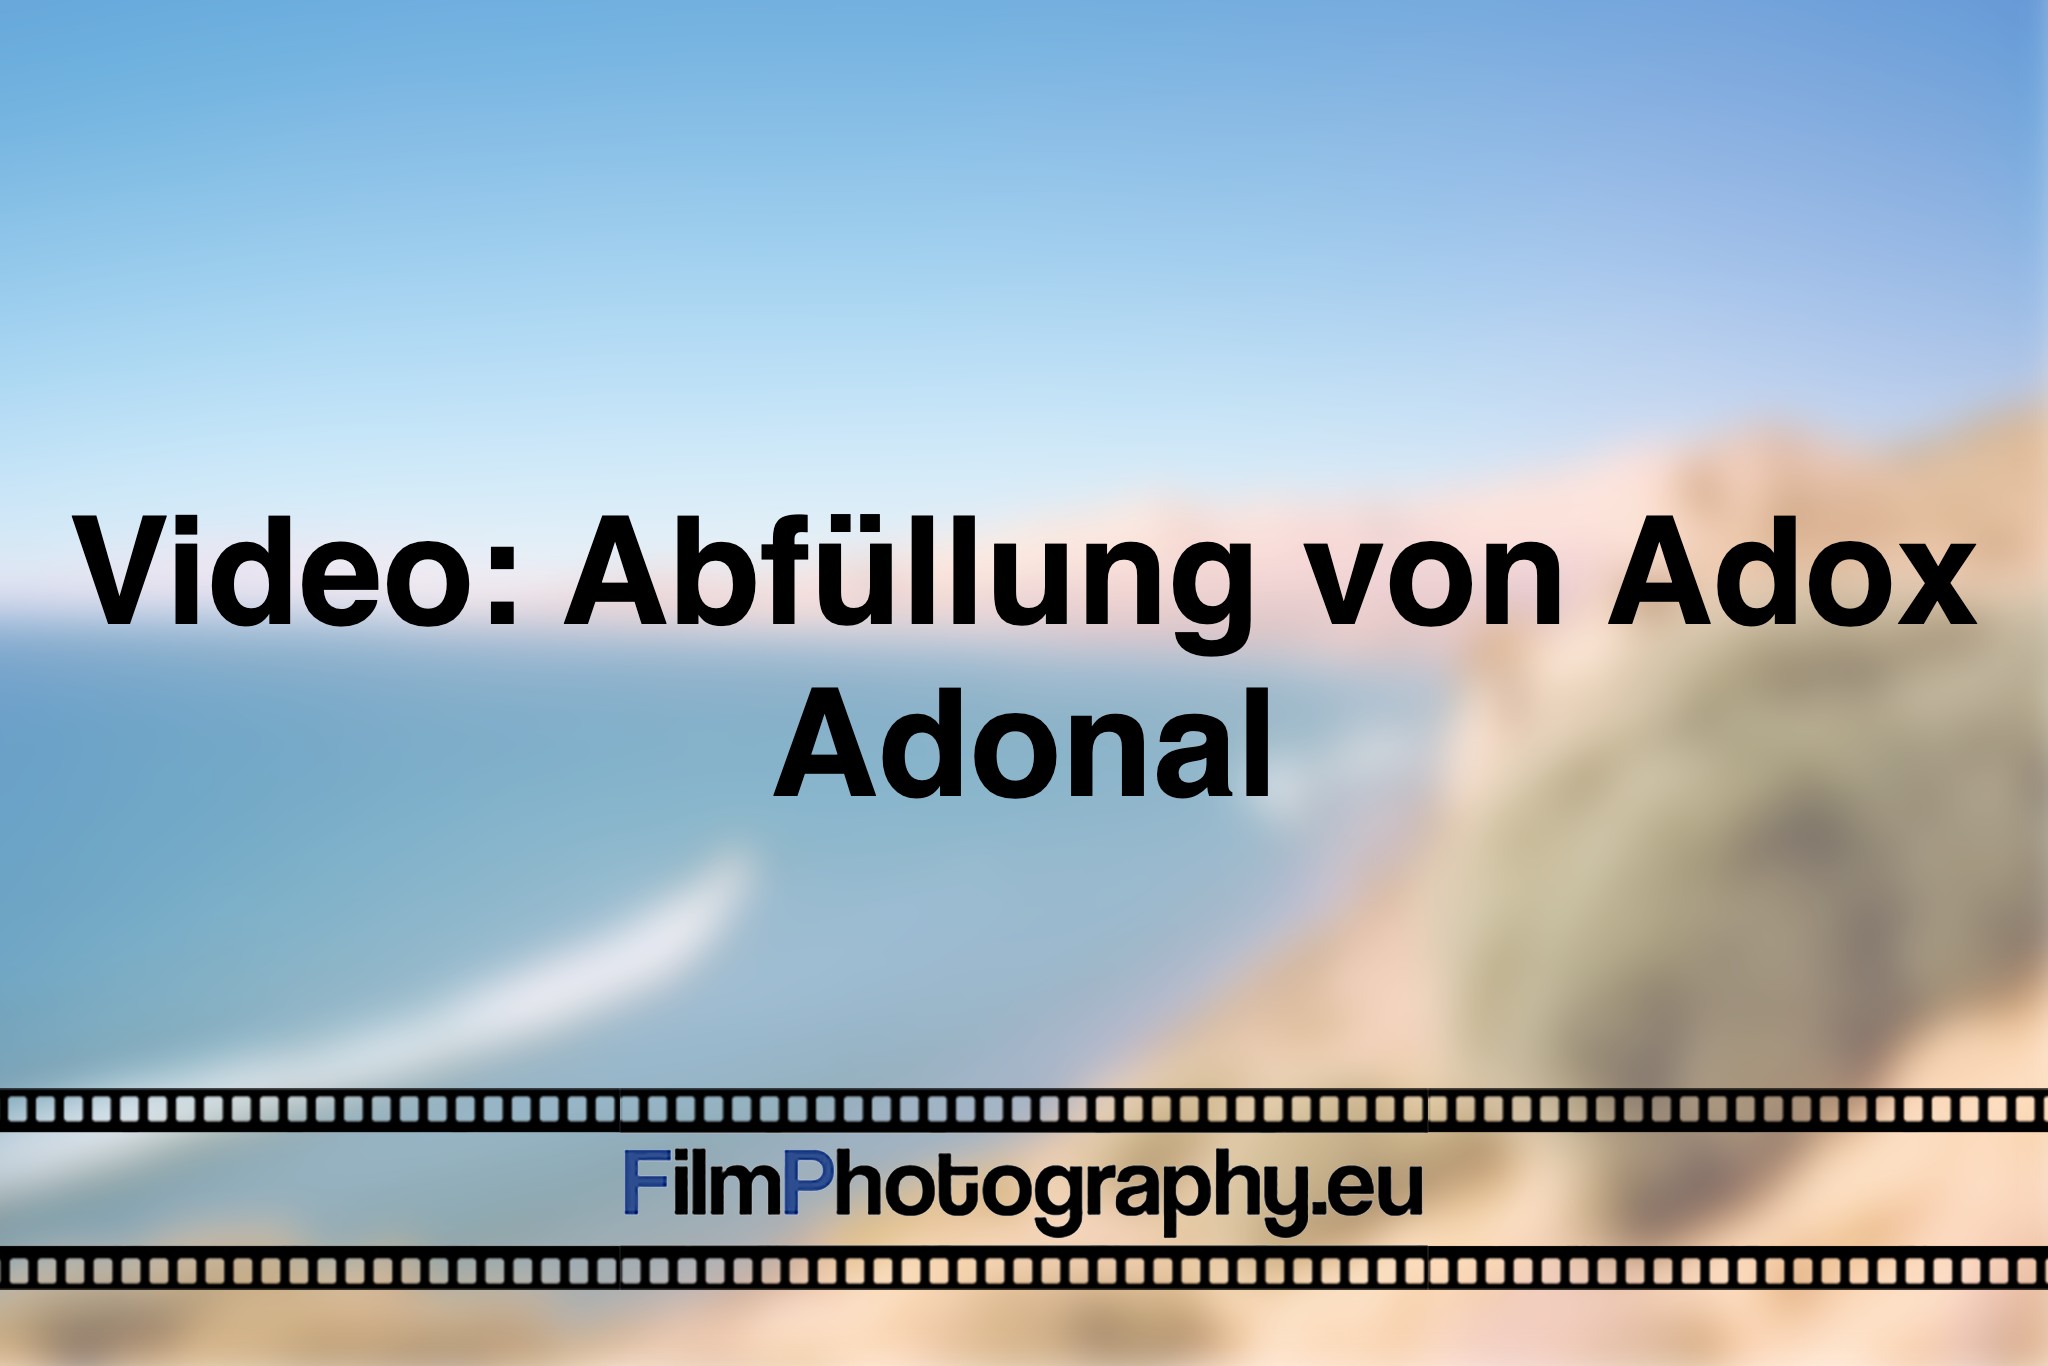 video-abfuellung-von-adox-adonal-foto-bnv